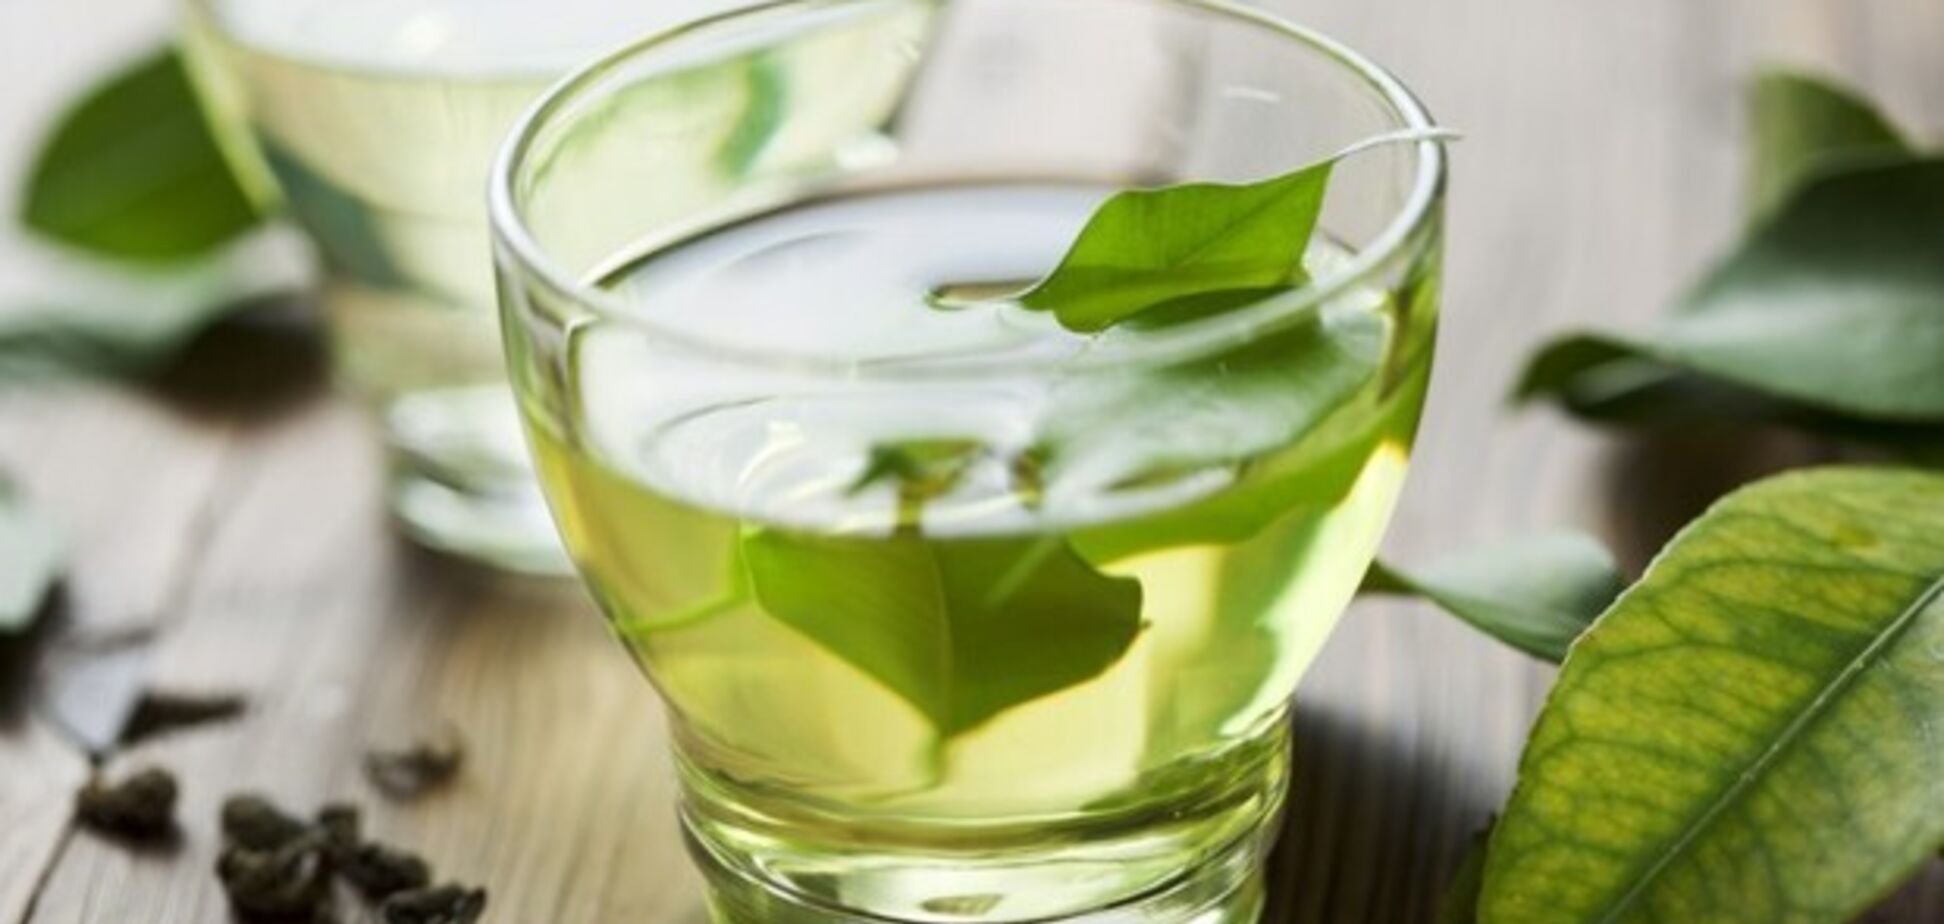 Лечит рак: у зеленого чая нашлись целительные свойства